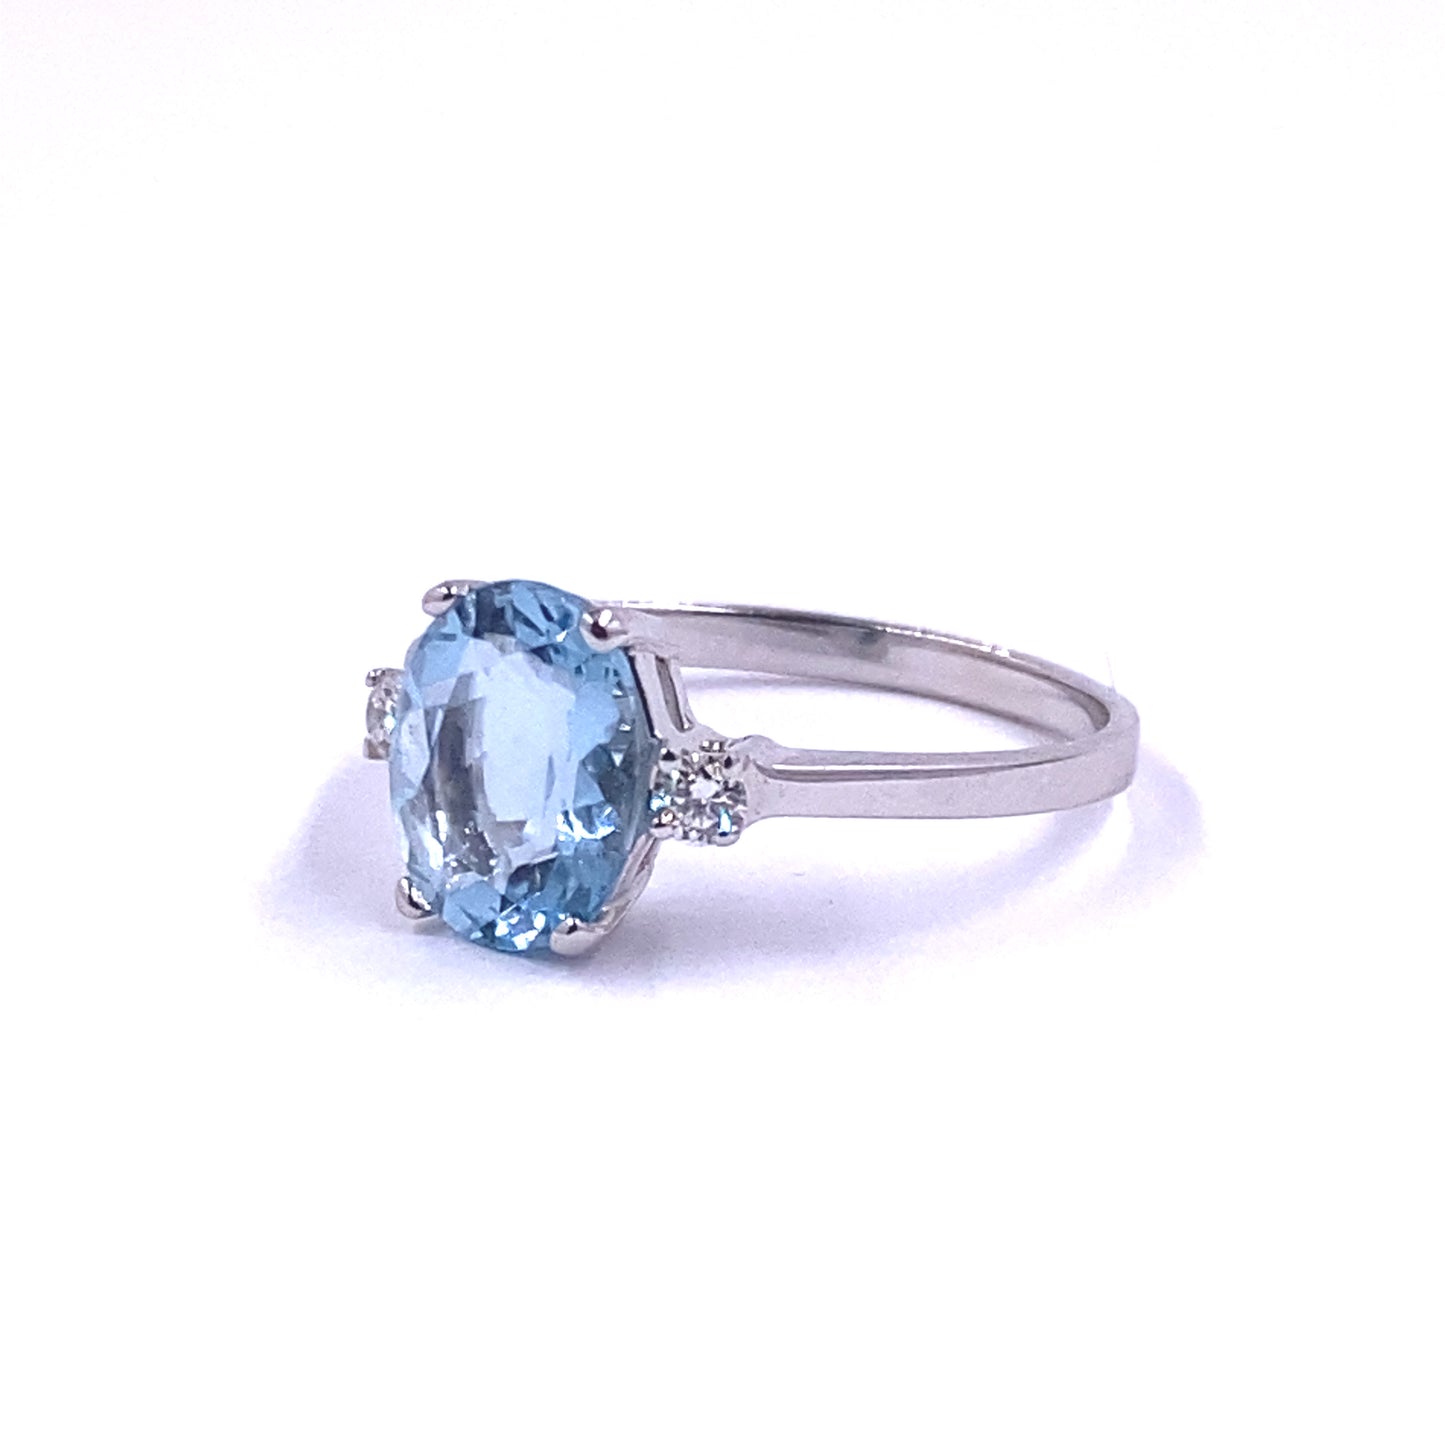 Mirco Visconti White Gold Ring Diamonds and Aquamarine